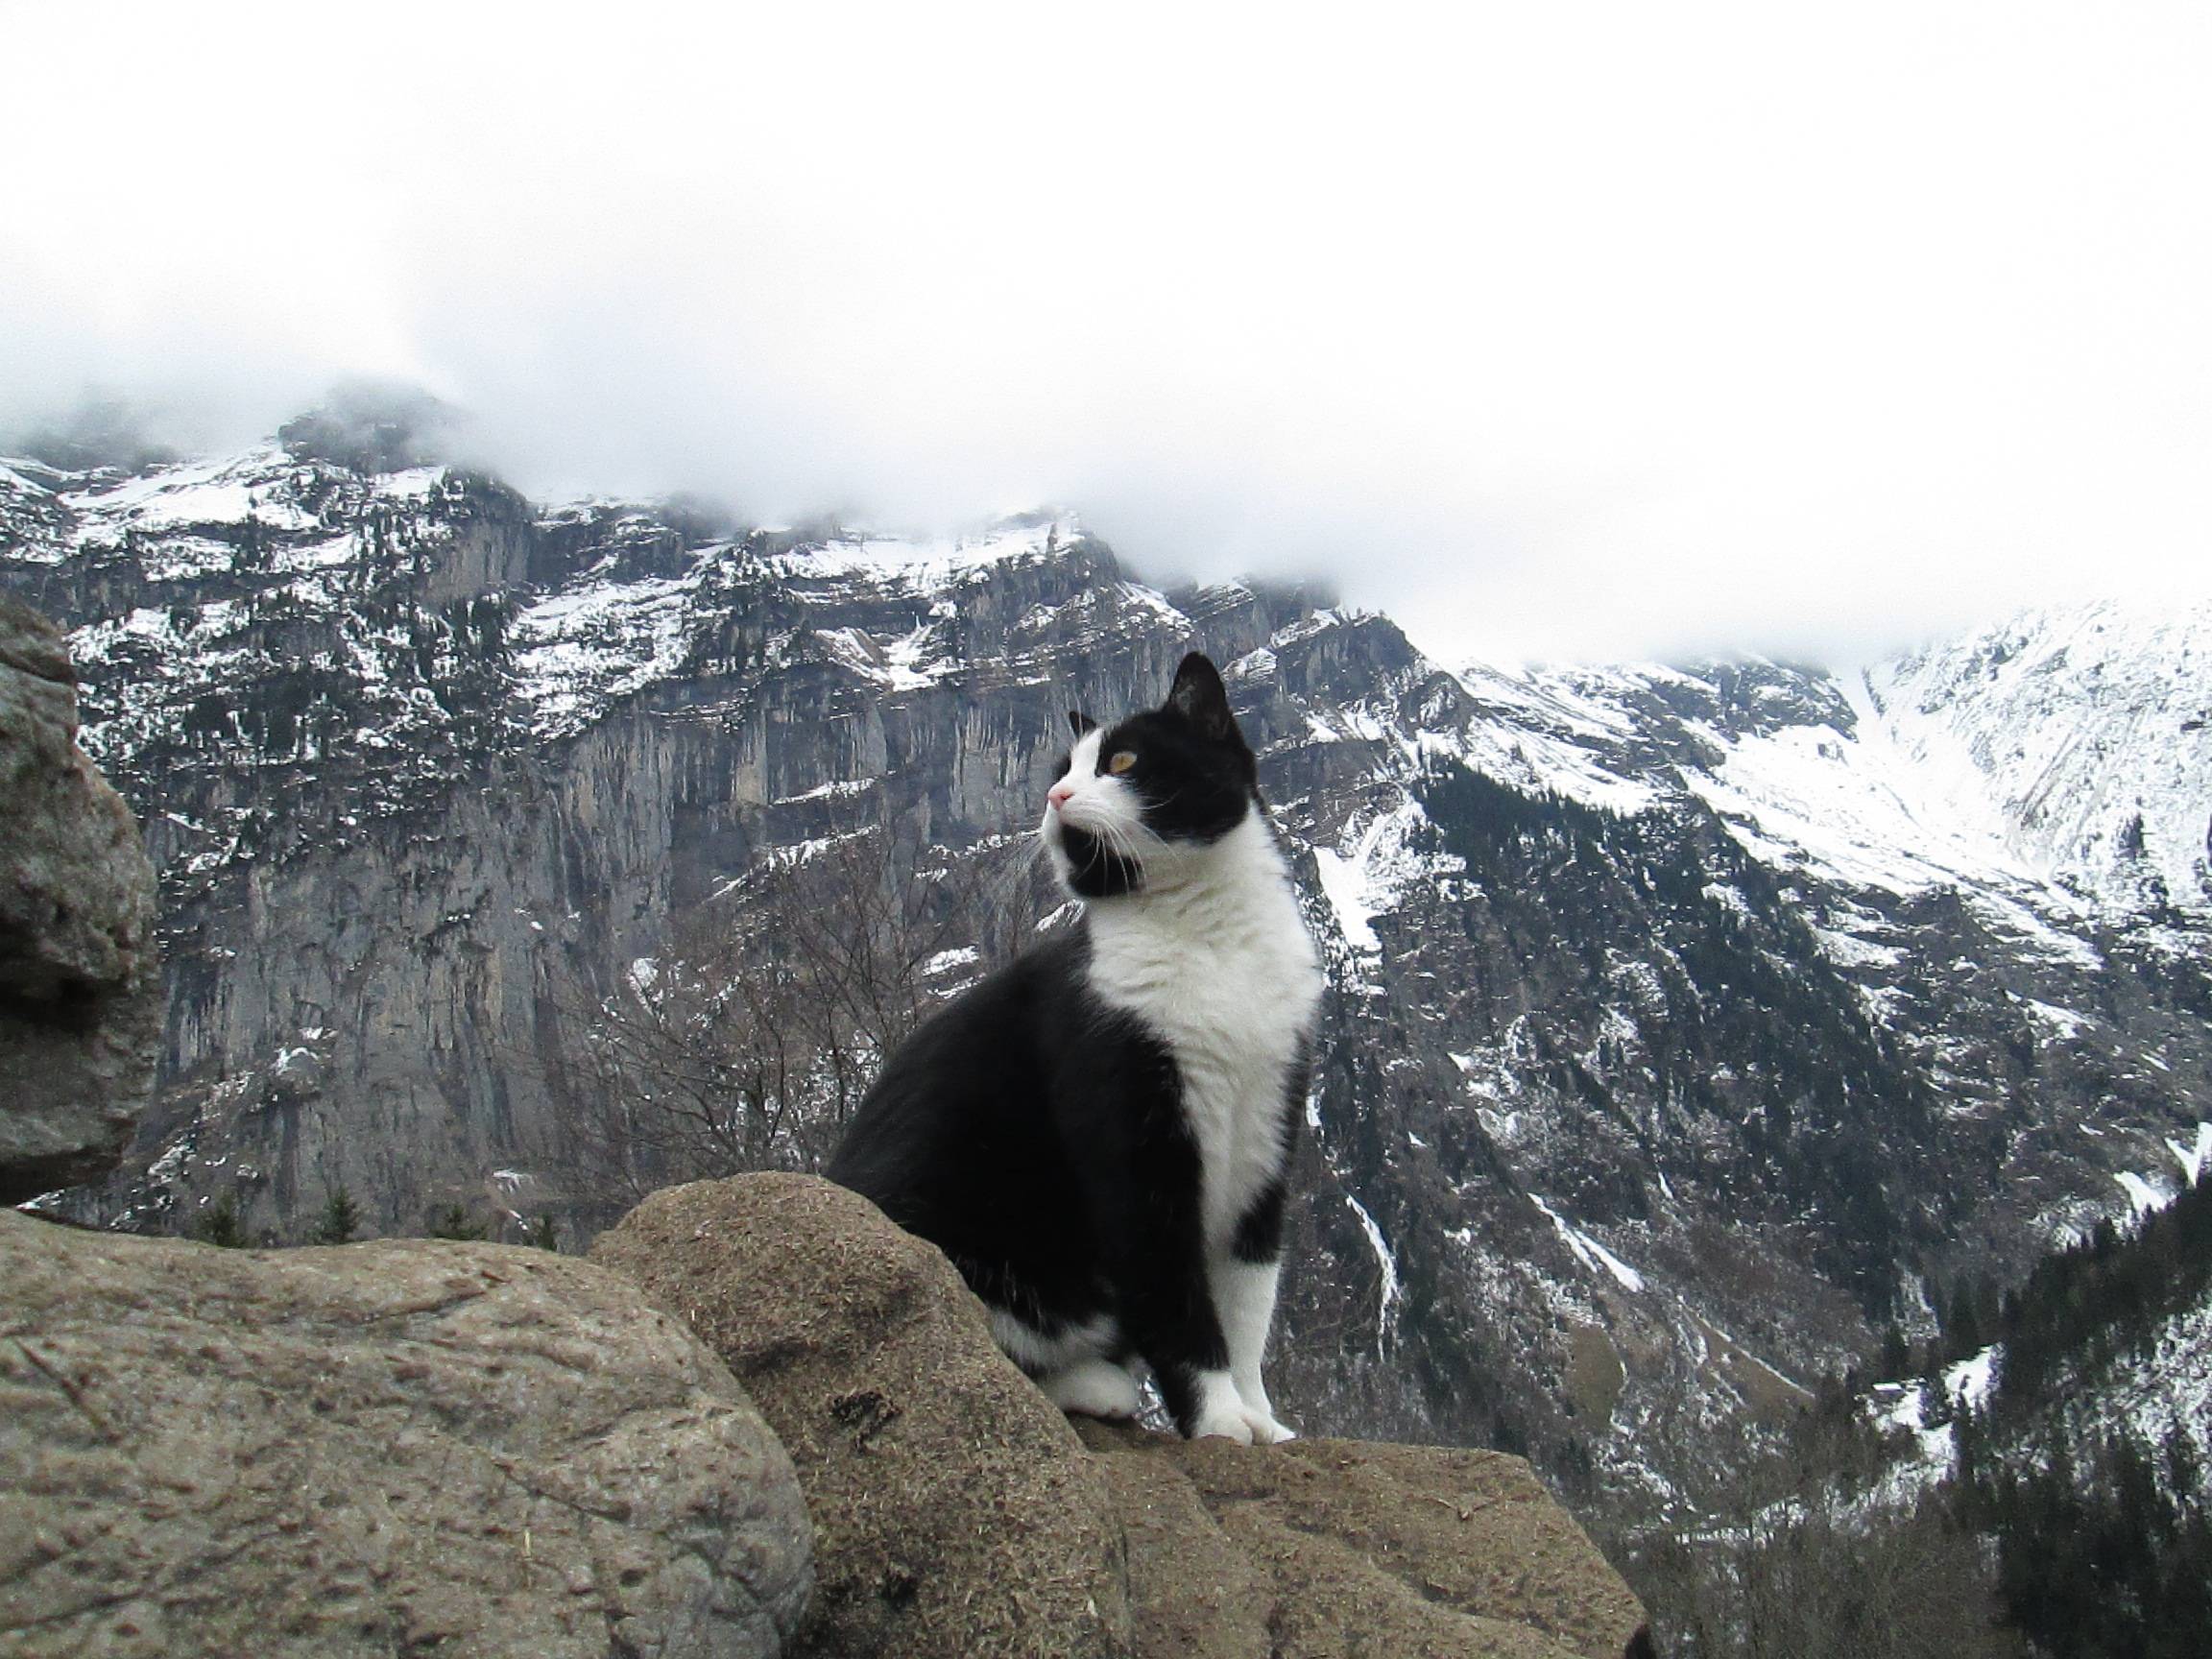 Hős cica mentette meg a svájci hegyekben eltévedt magyar turistát - videó